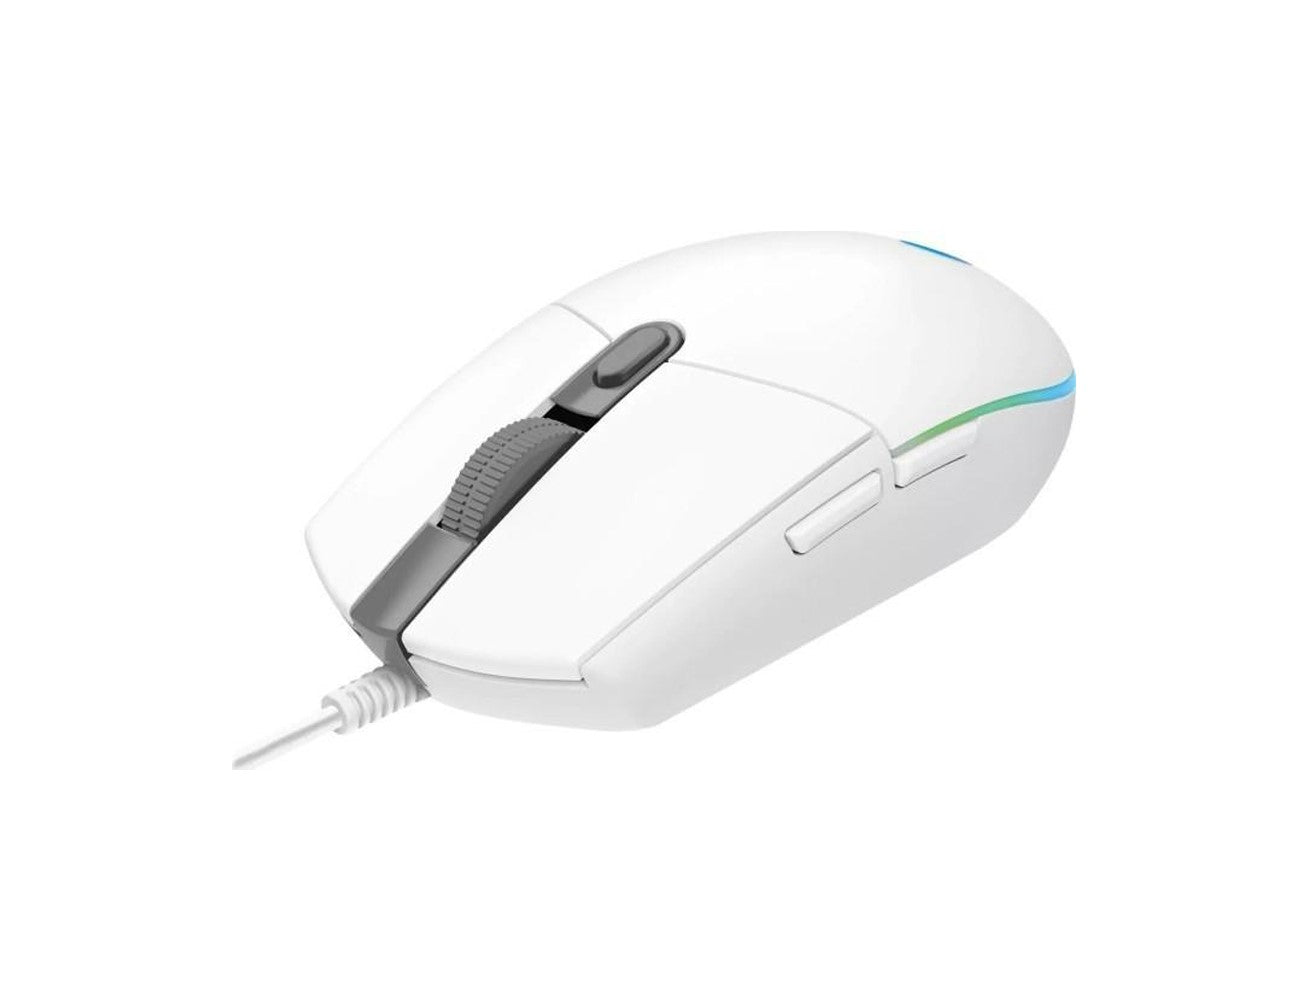 Logitech G203 LIGHTSYNC Gaming Mouse - White